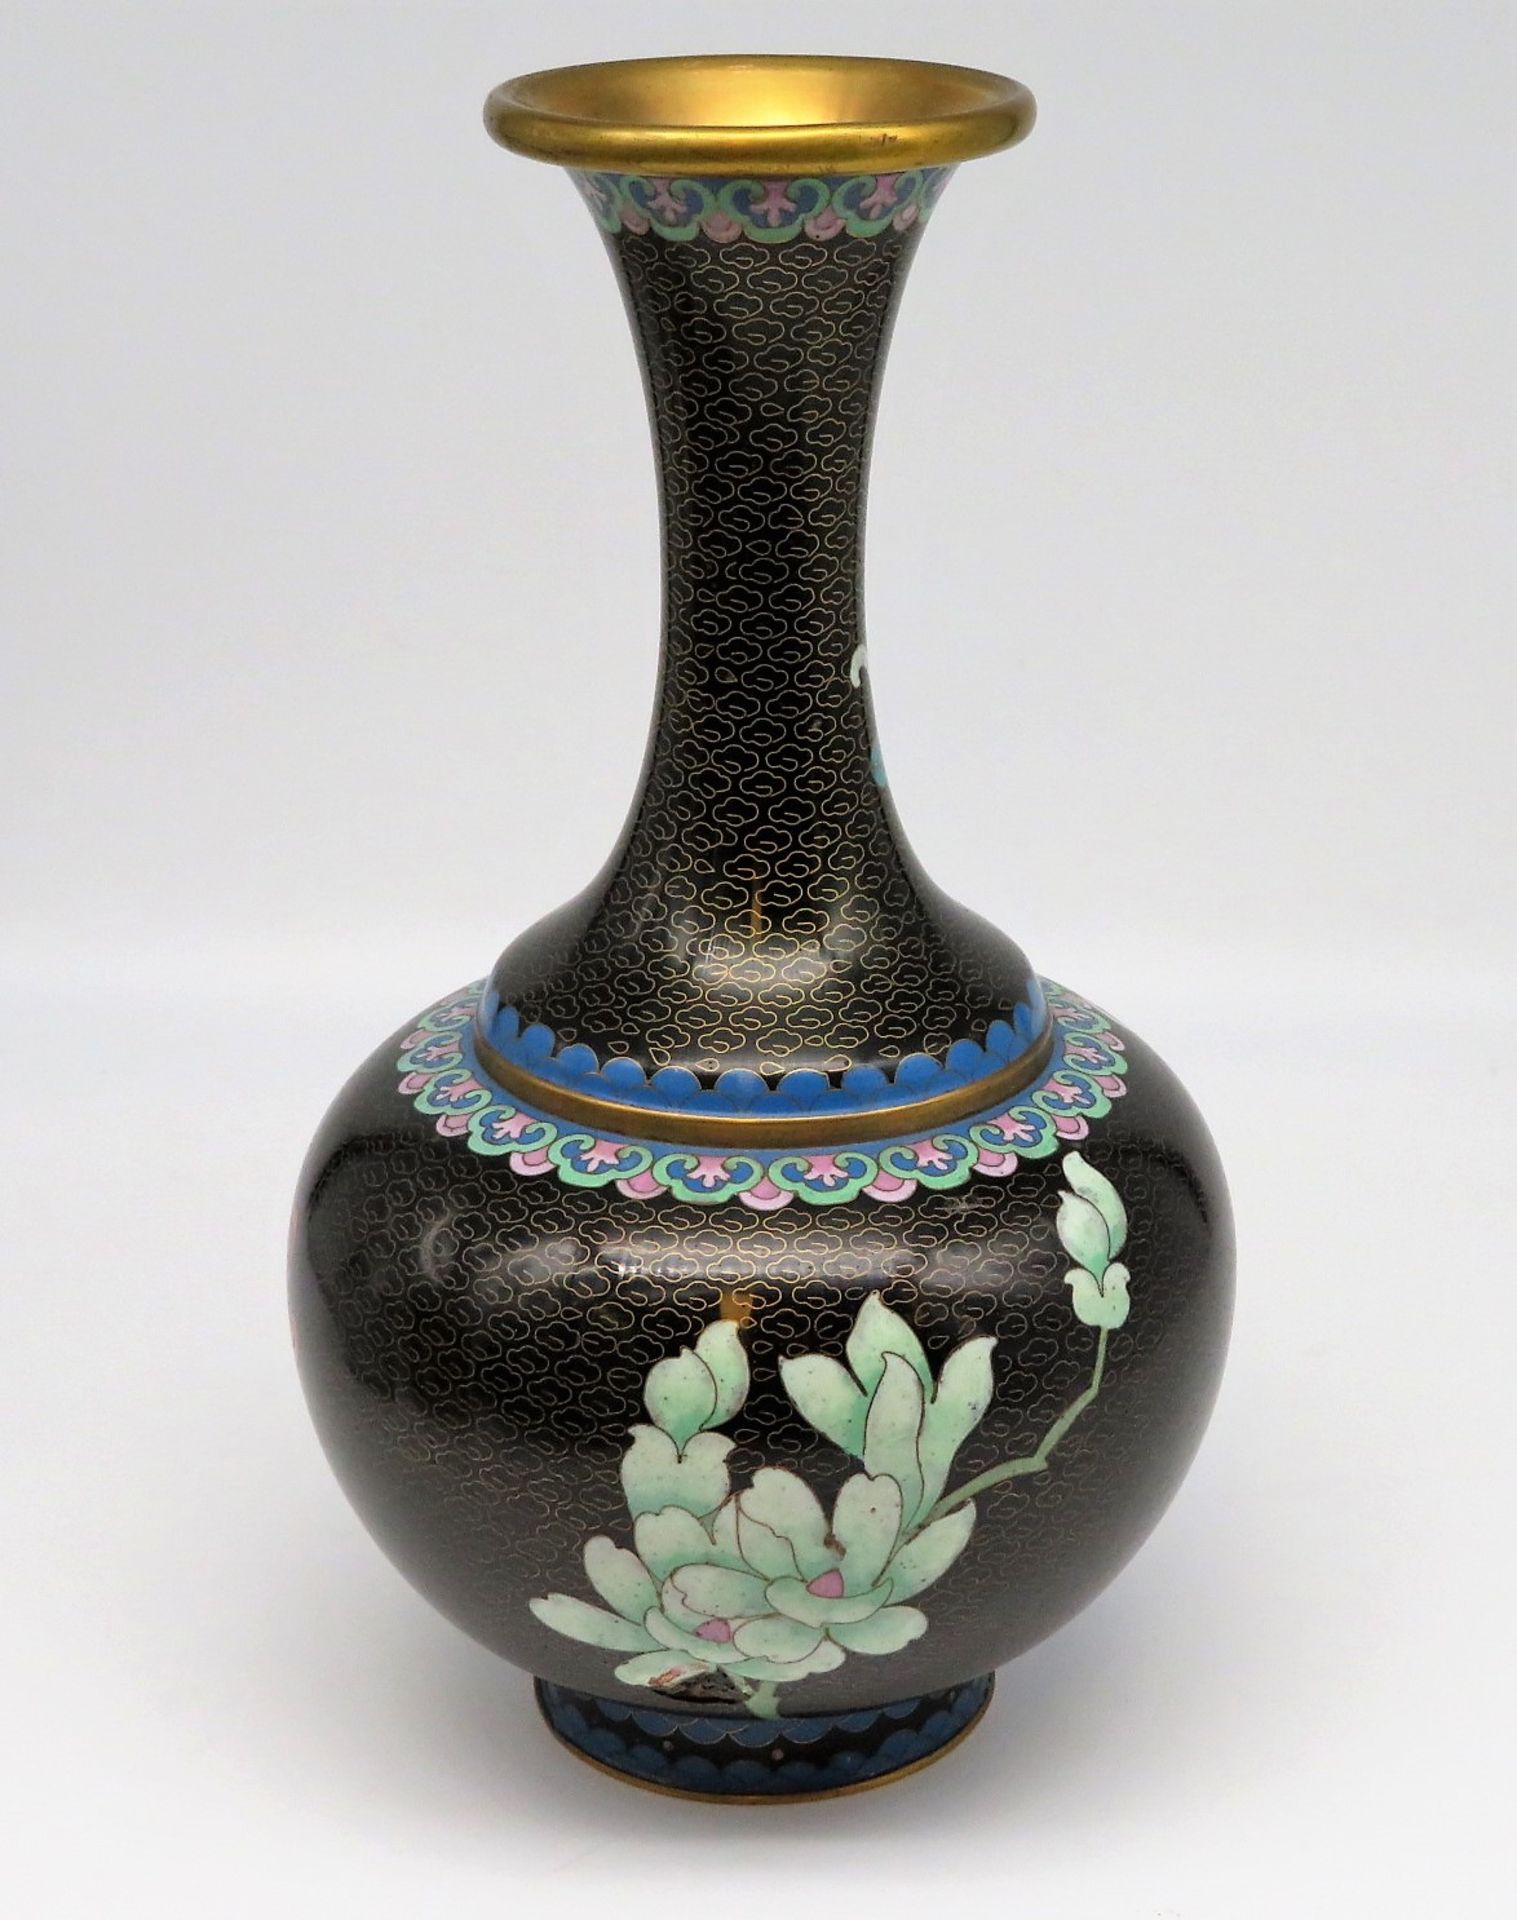 Cloisonné Vase, Japan, farbiger Zellenschmelz, Loch im Boden (für eventuelle Elektrifizierung), h 3